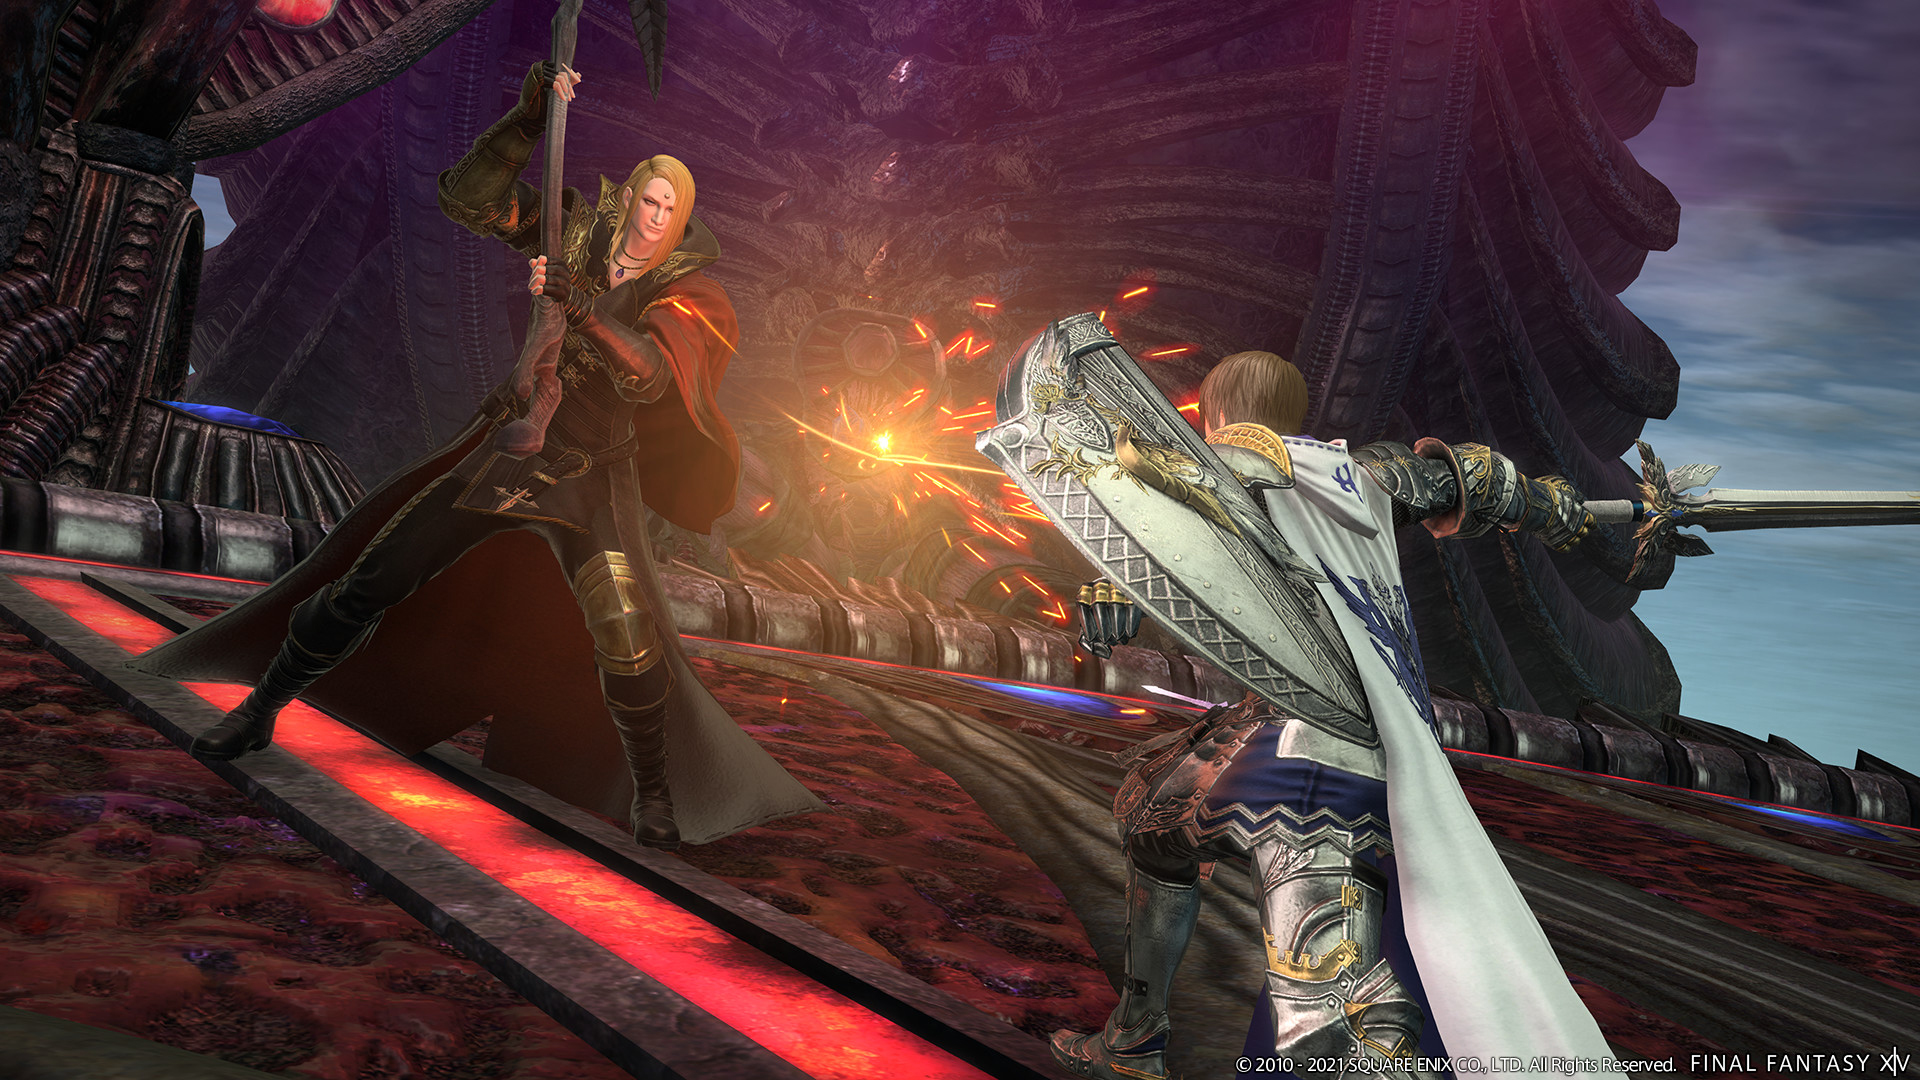 Capture d'écran de Final Fantasy 14 montrant deux personnages se battant dans une cinématique épique de FF14